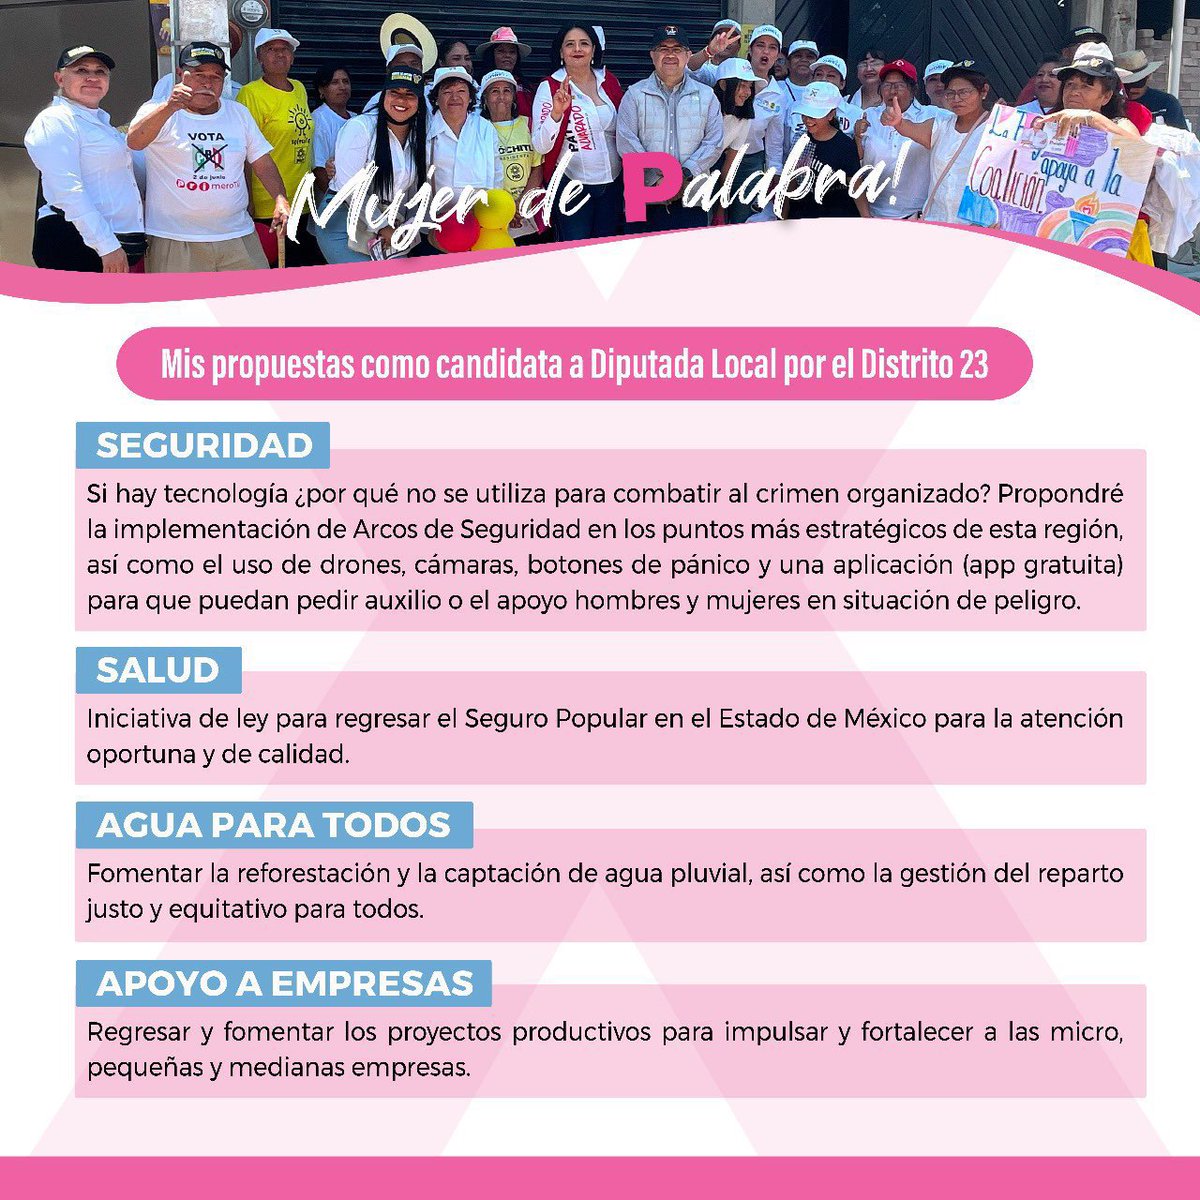 Amigos y amigas, éstas son mis propuestas para la Diputación local distrito 23 de Texcoco, Chiconcuac, Chiautla y Papalotla